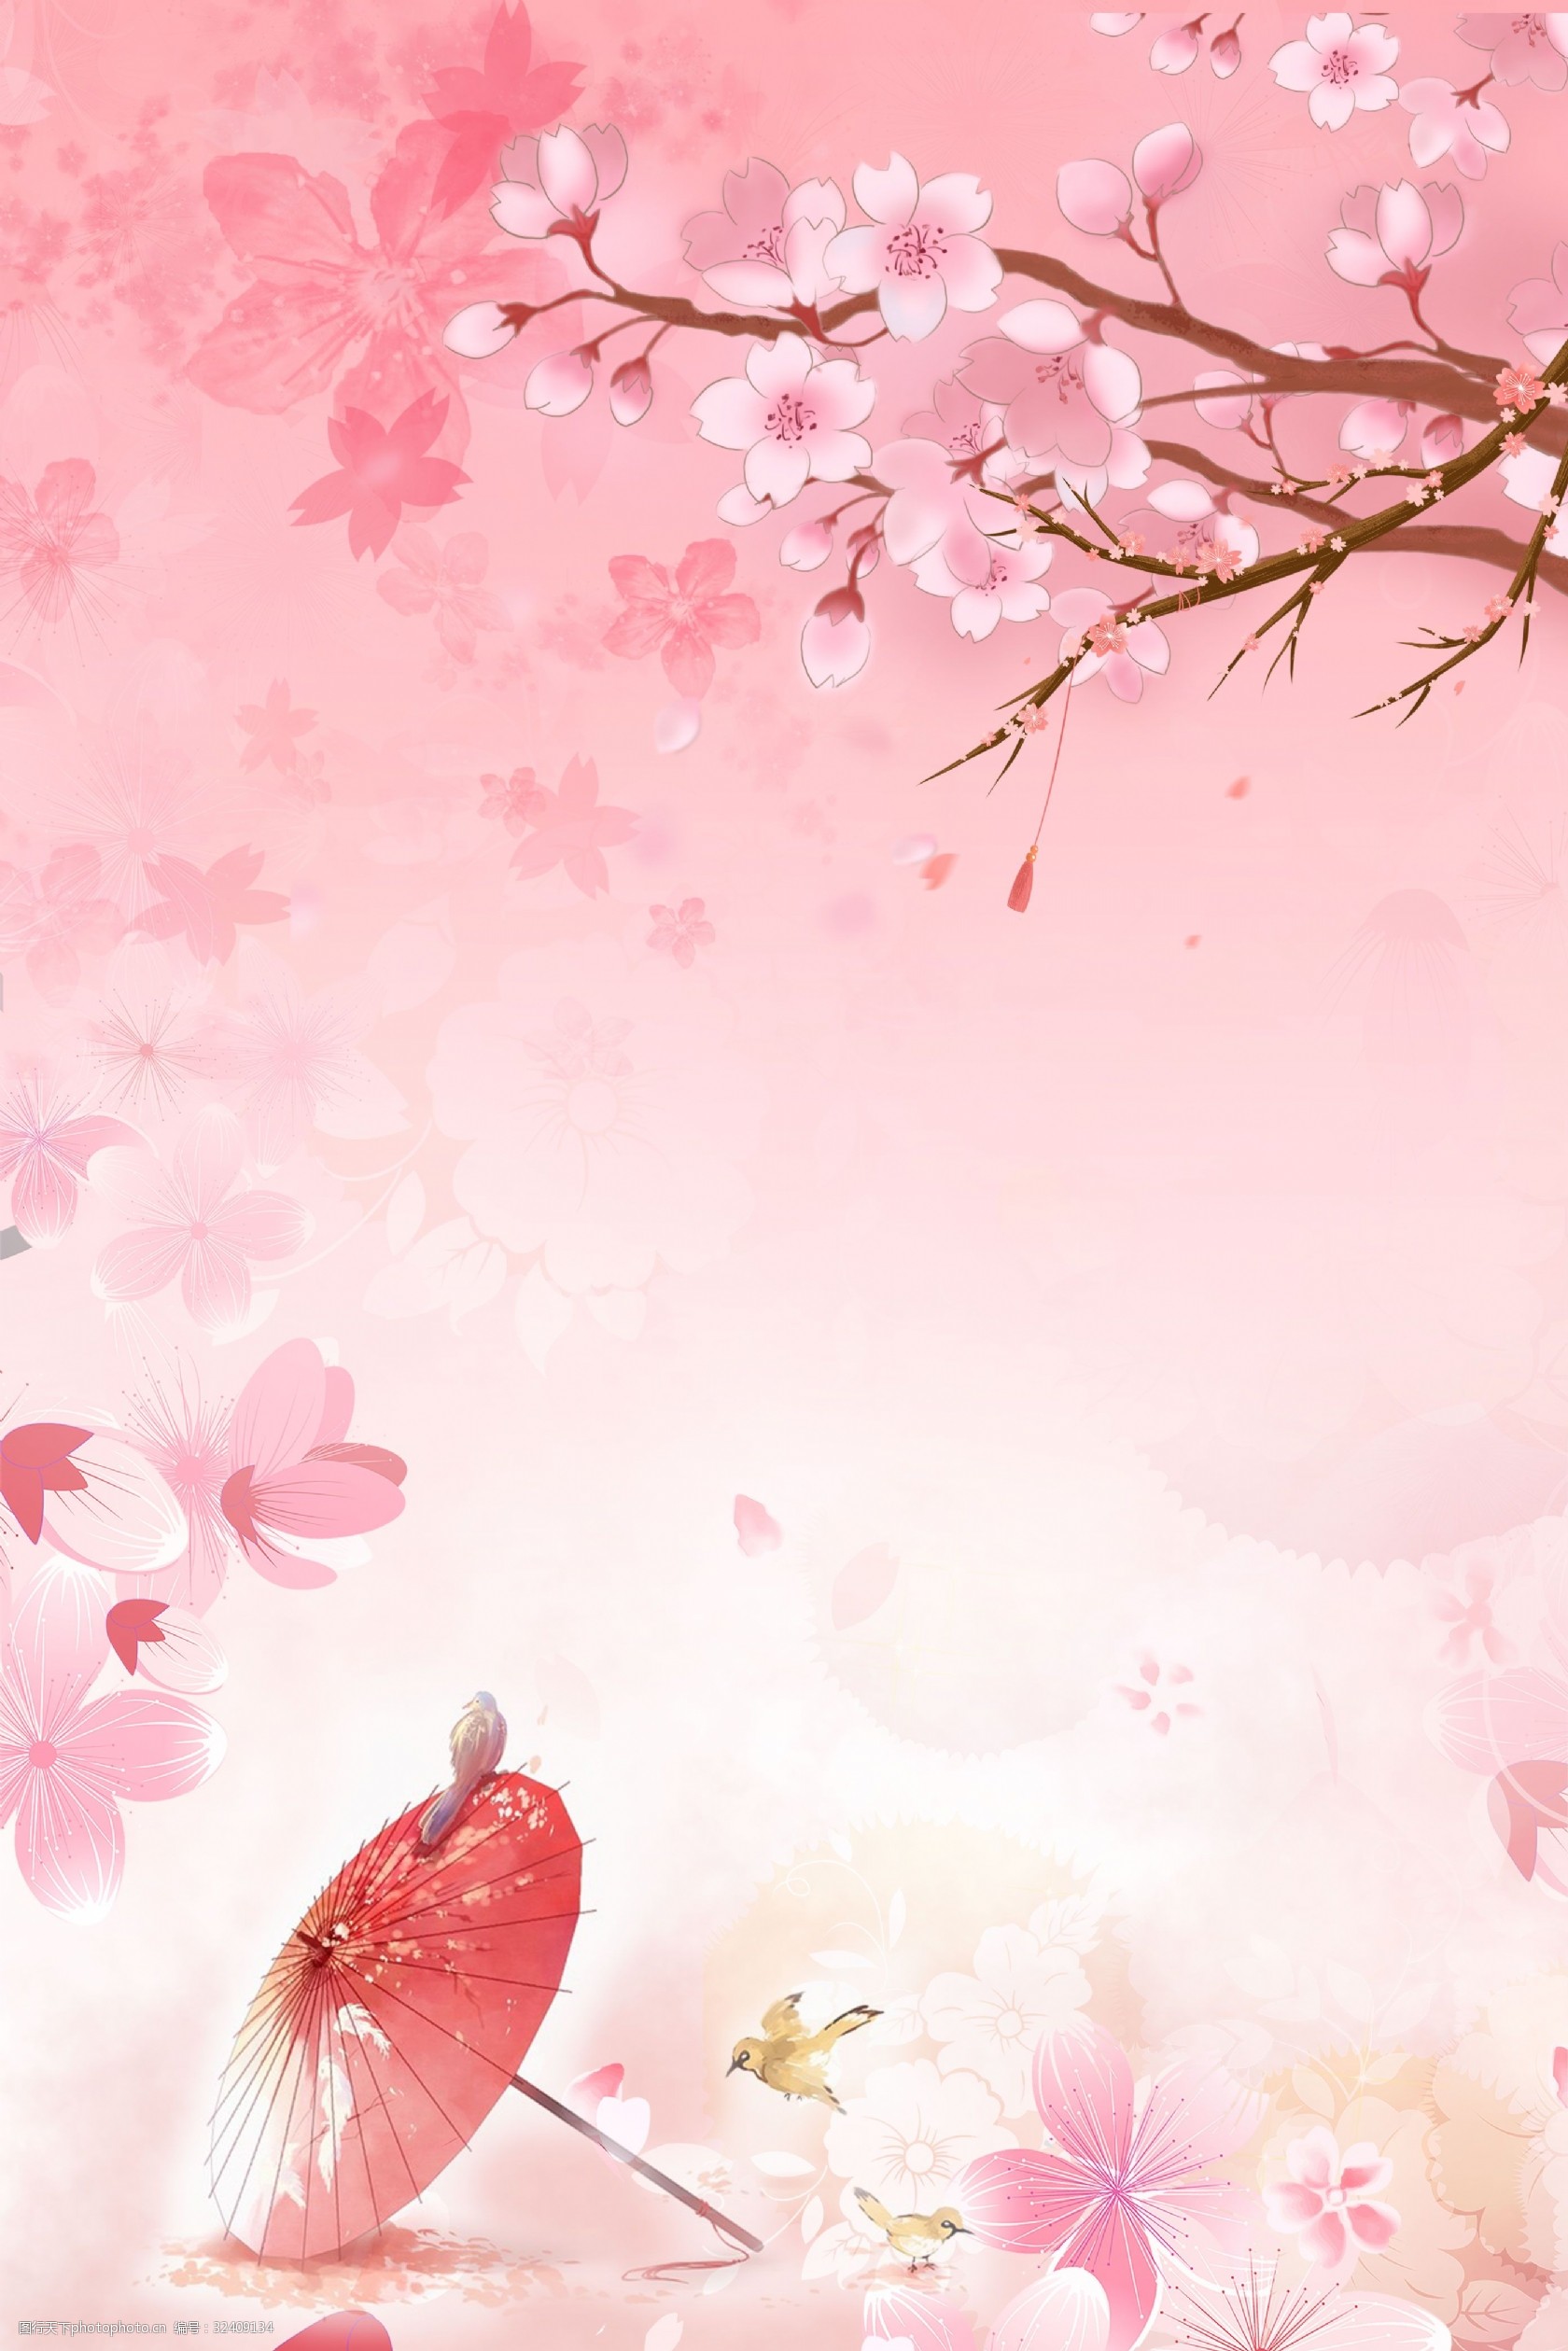 关键词:粉色浪漫樱花季合成背景 樱花 樱花季 樱花节 唯美 粉色 花瓣